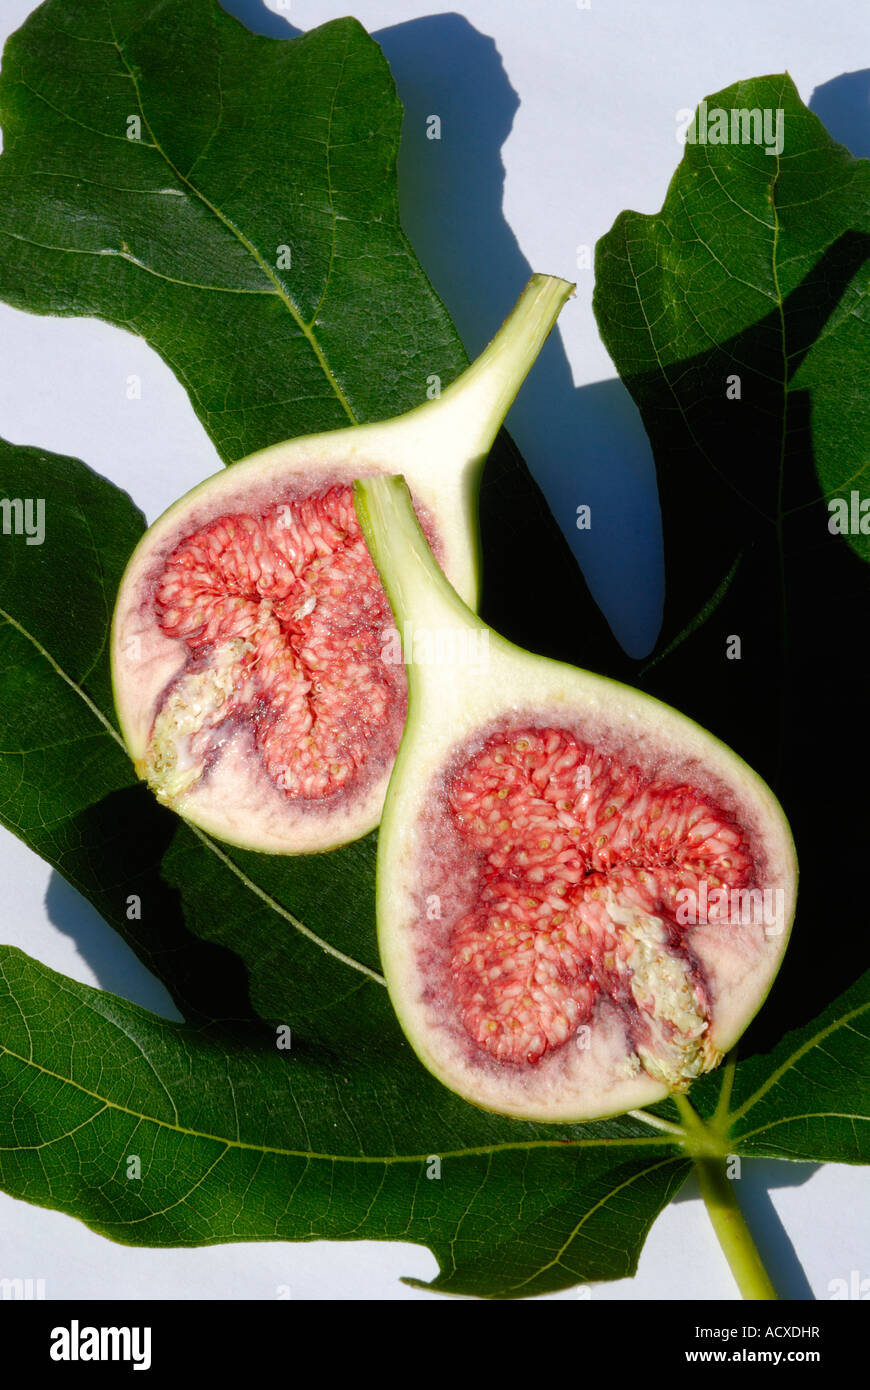 Figuier commun fig réduit de moitié dans un contexte d'une feuille Banque D'Images